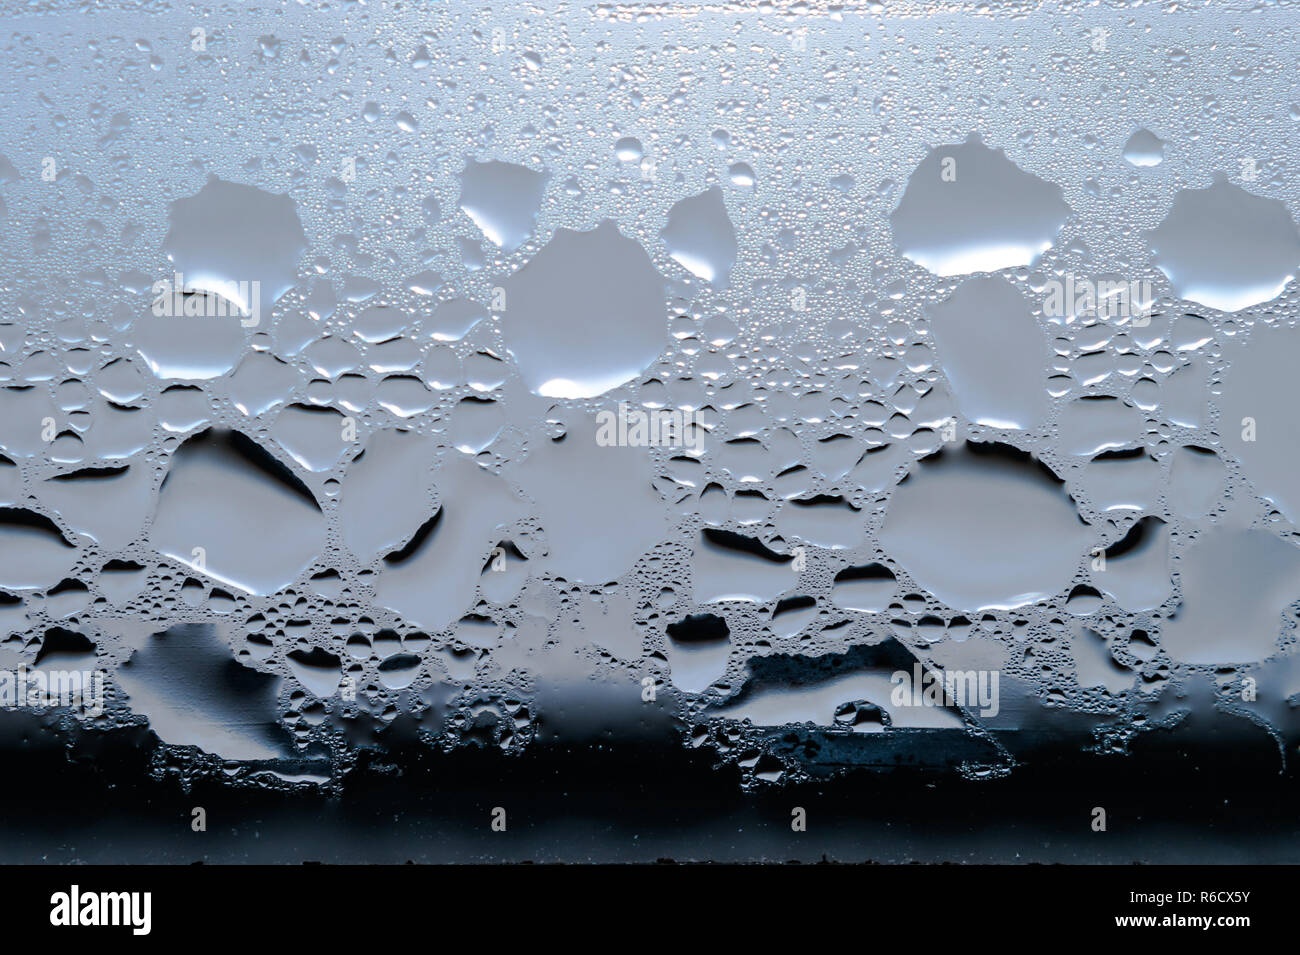 La condensation, vapeur, pluie, gouttes d'eau de différentes tailles sur une surface en verre. Banque D'Images